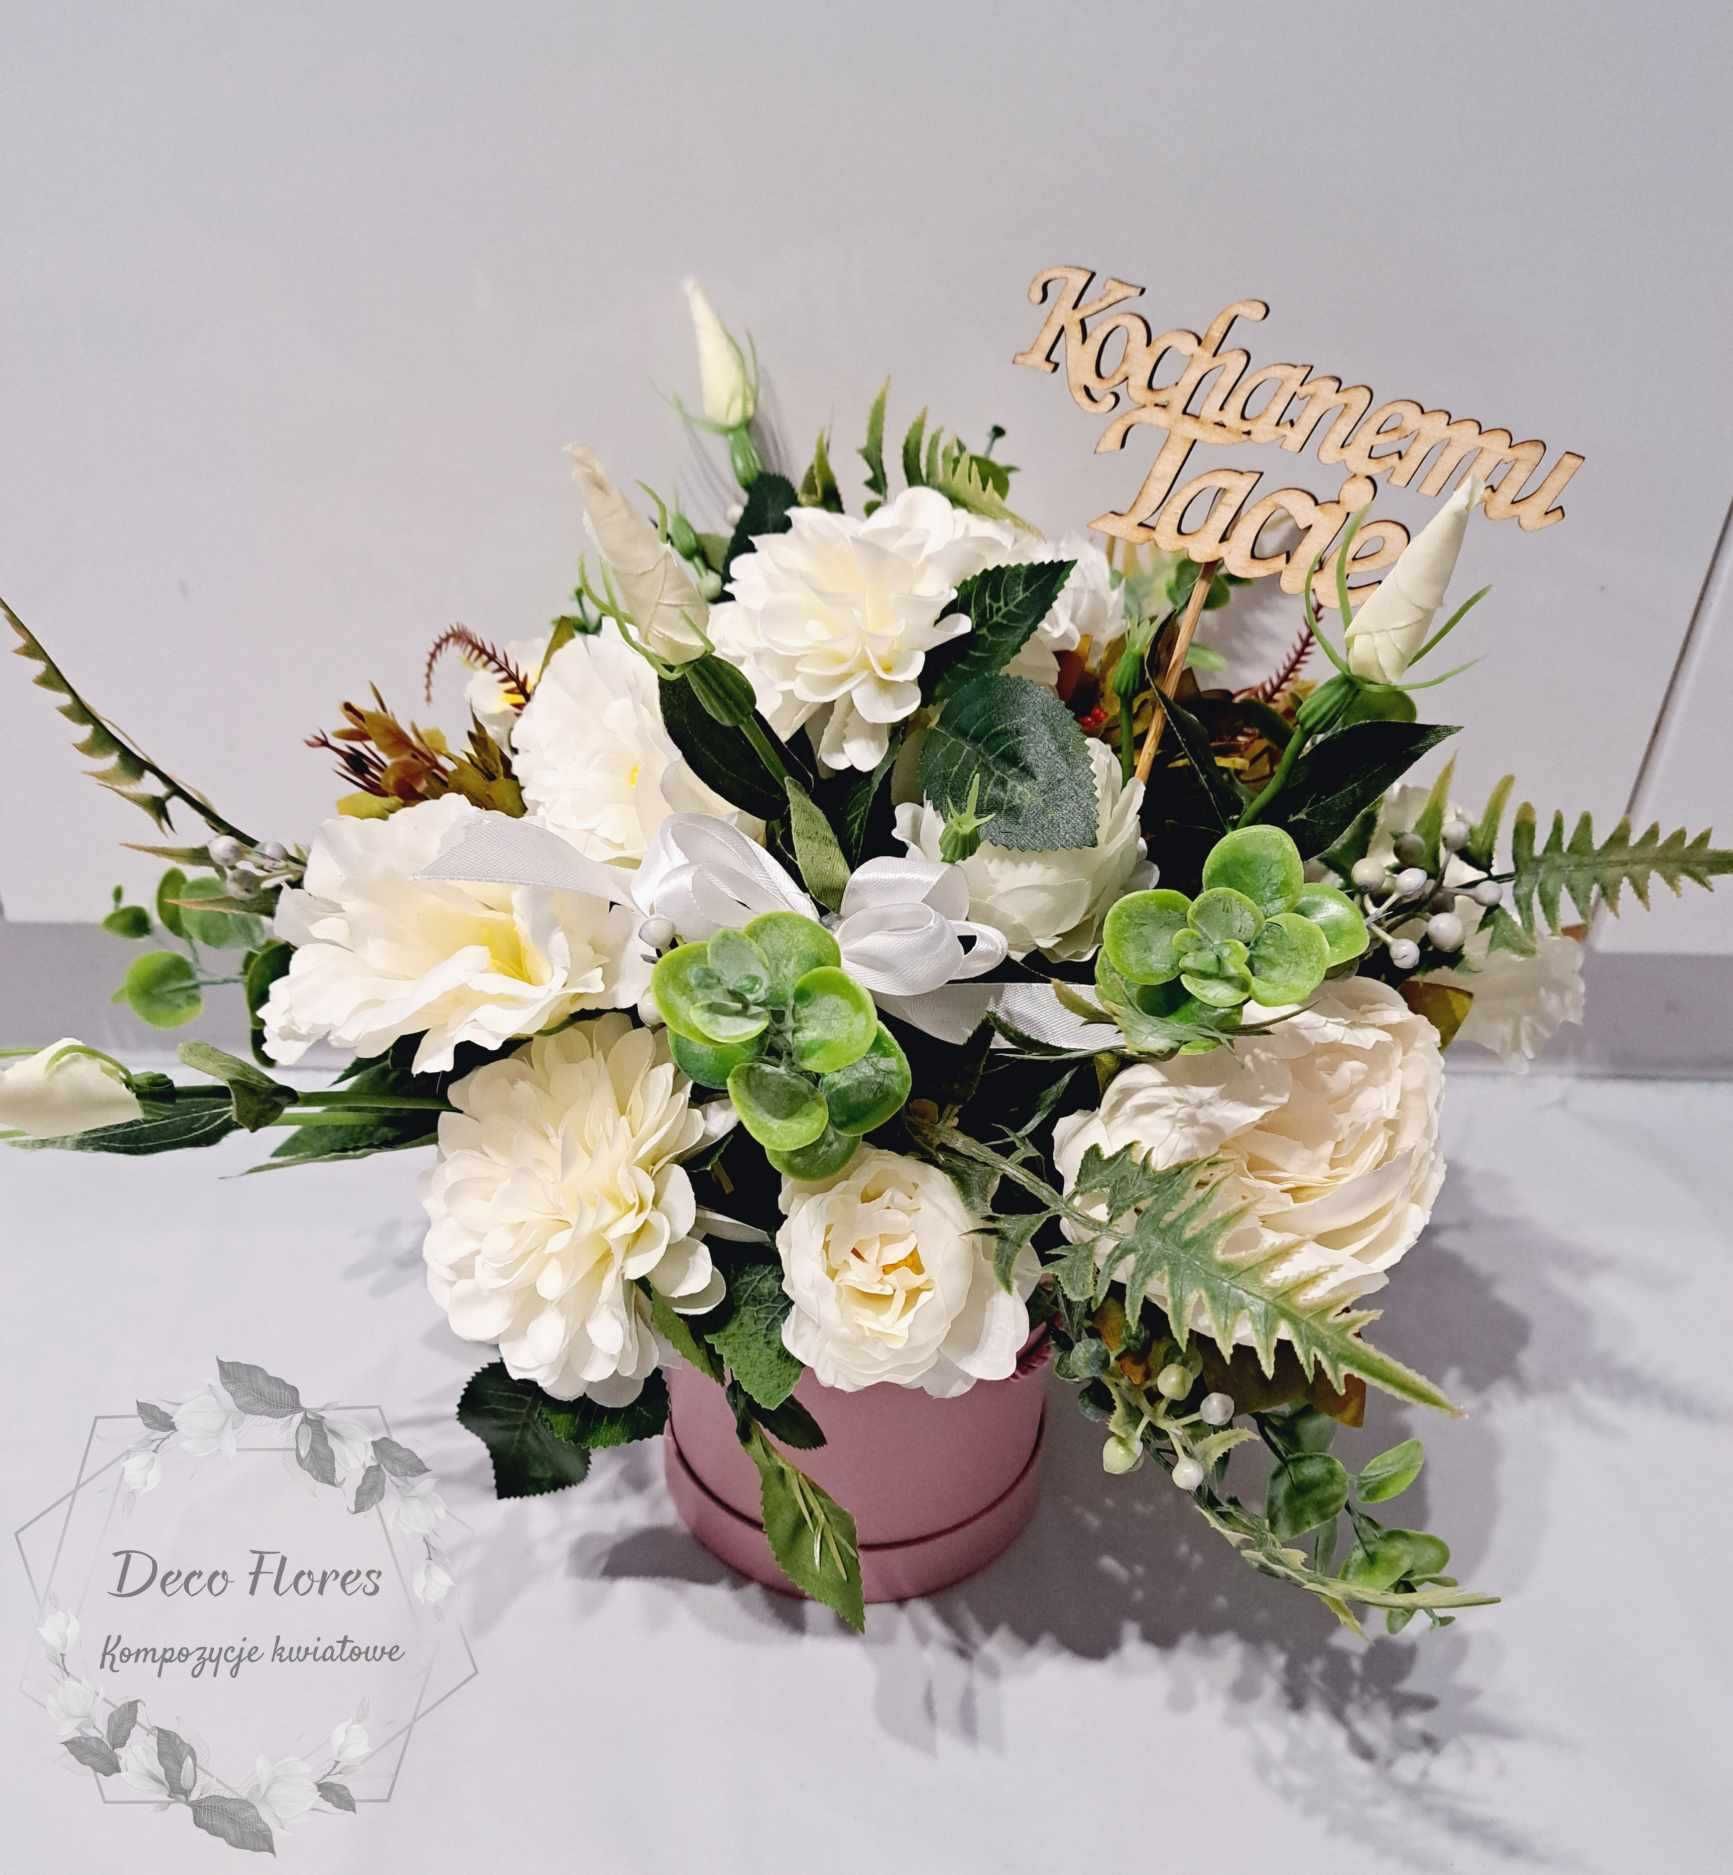 Flowerboxy kwiaty w pudełku Dzień Babci urodziny imieniny rocznica